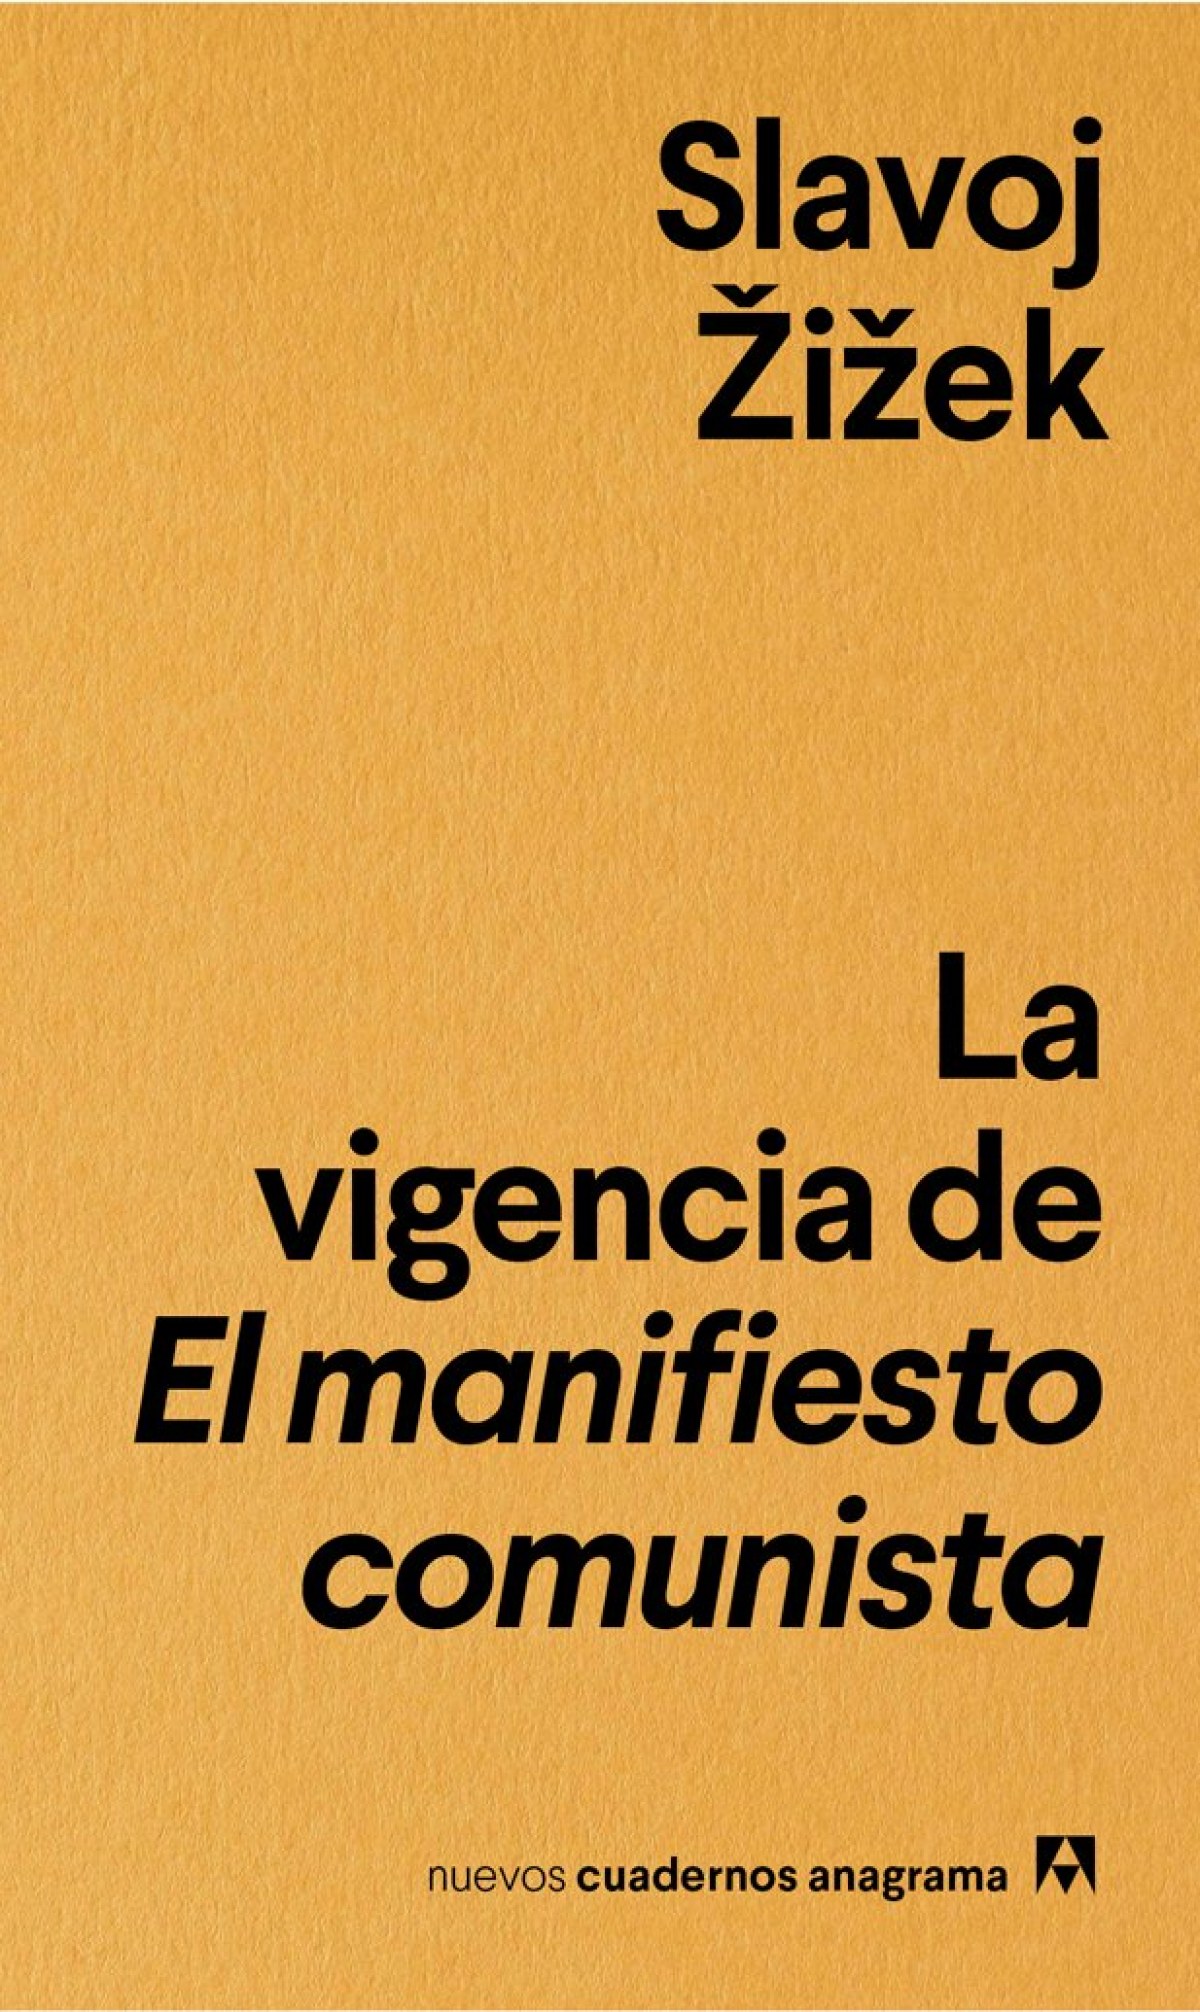 La vigencia de el manifiesto comunista - Zizek, Slavoj